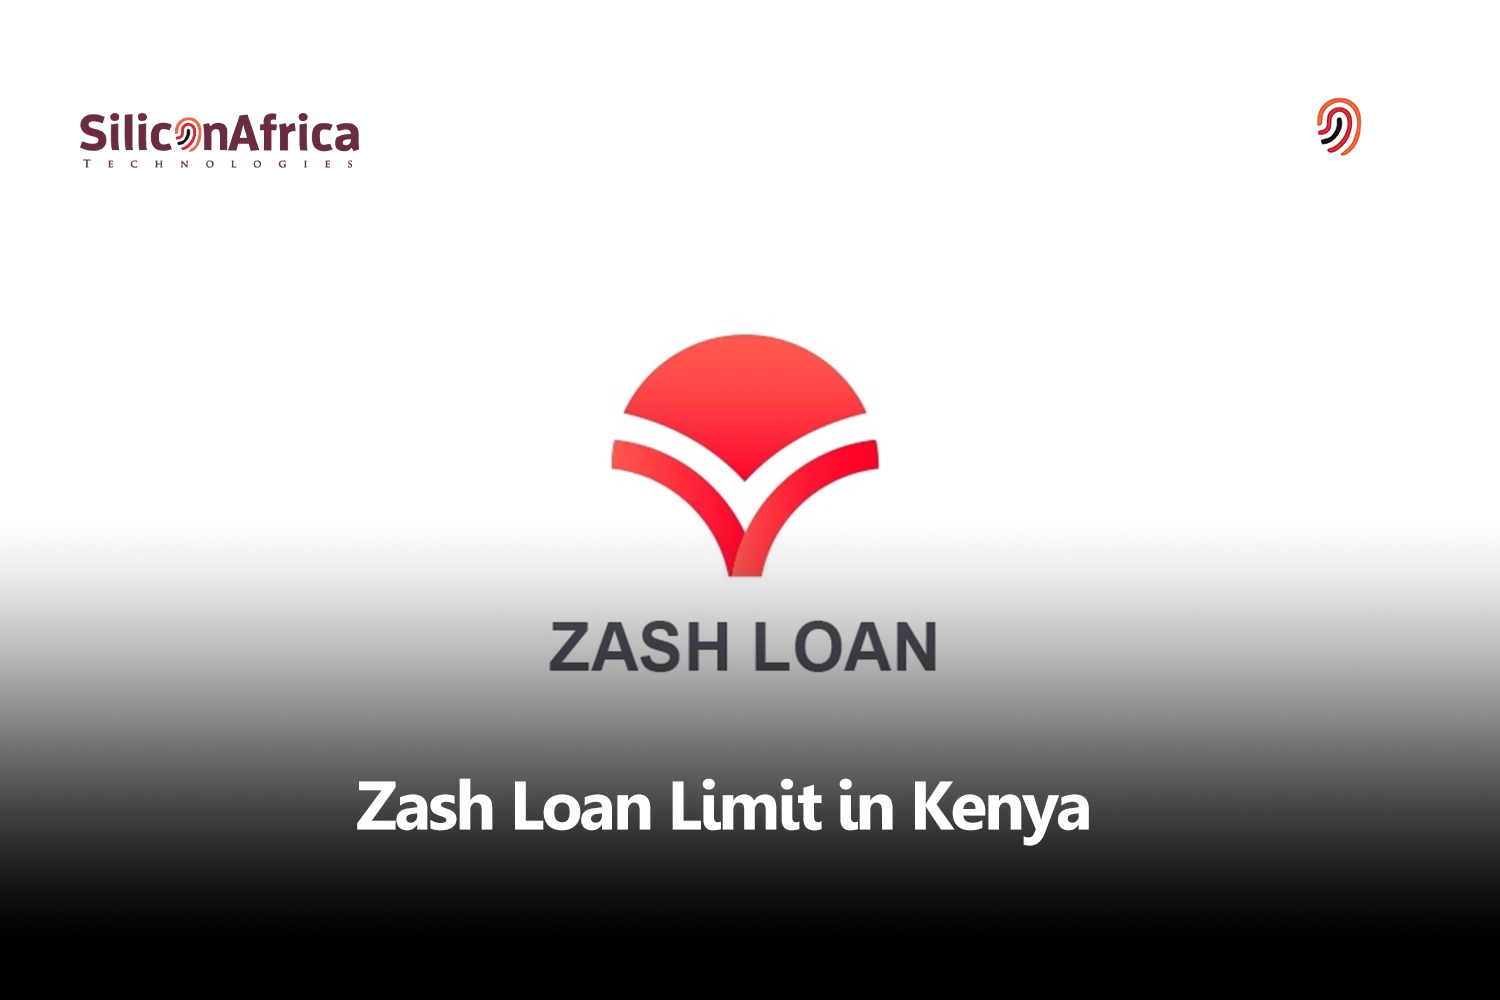 Zash Loan Limit in Kenya